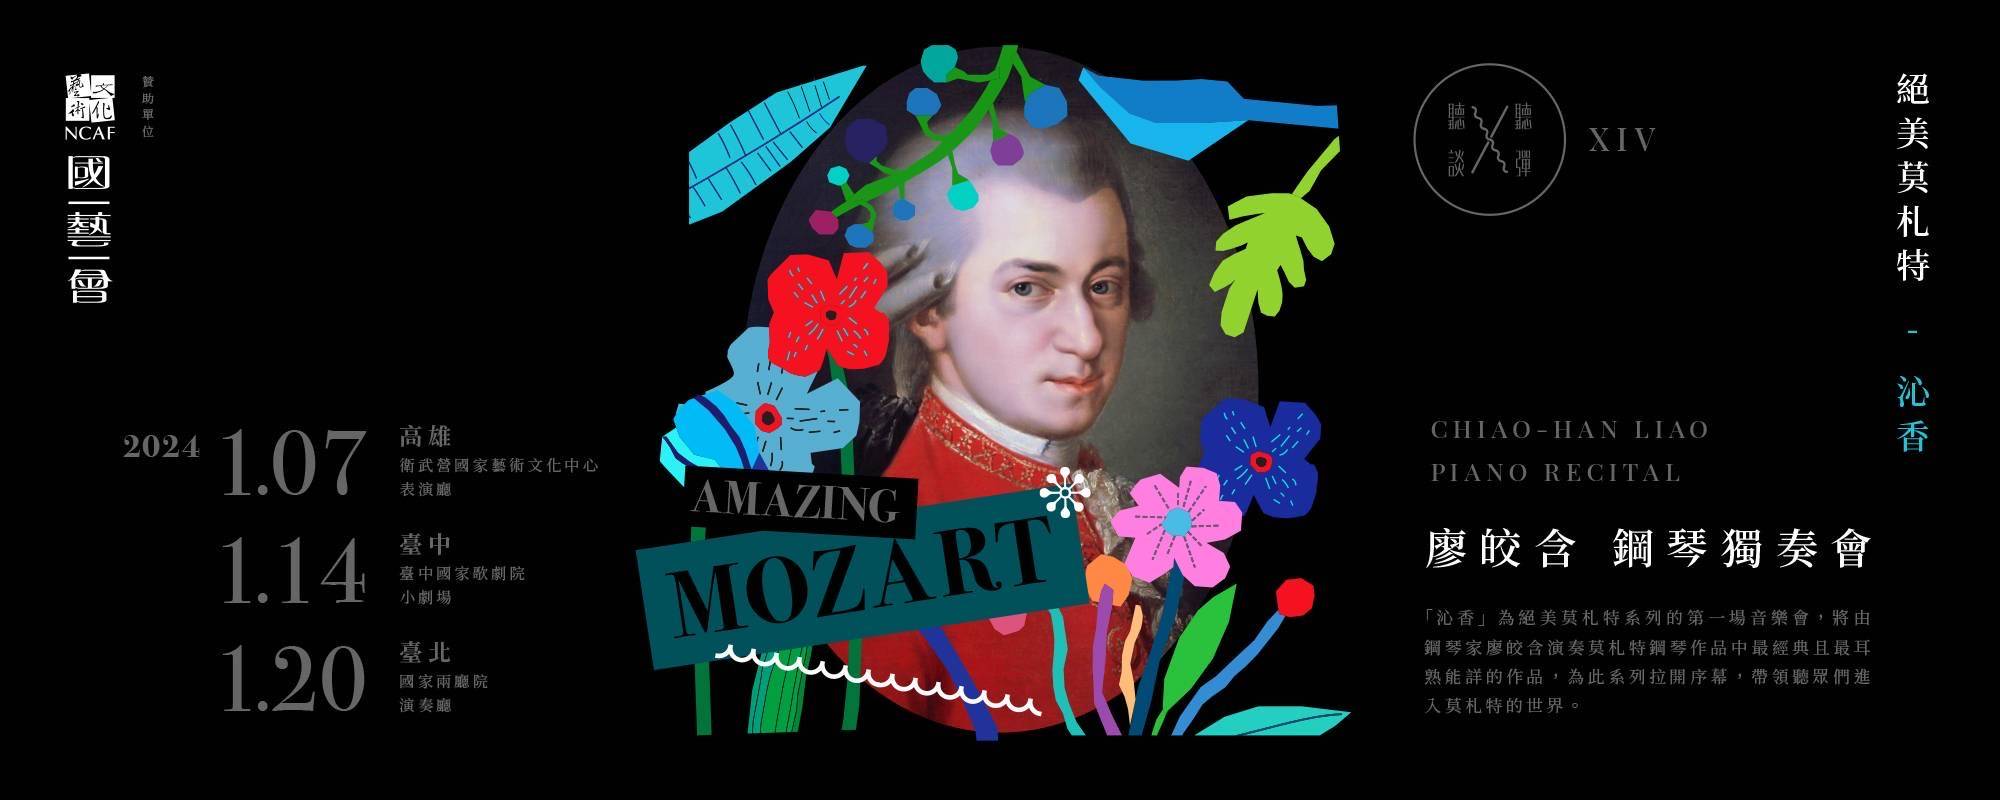 《聽聽 彈談XIV～絕美莫札特Amazing Mozart「沁香」》